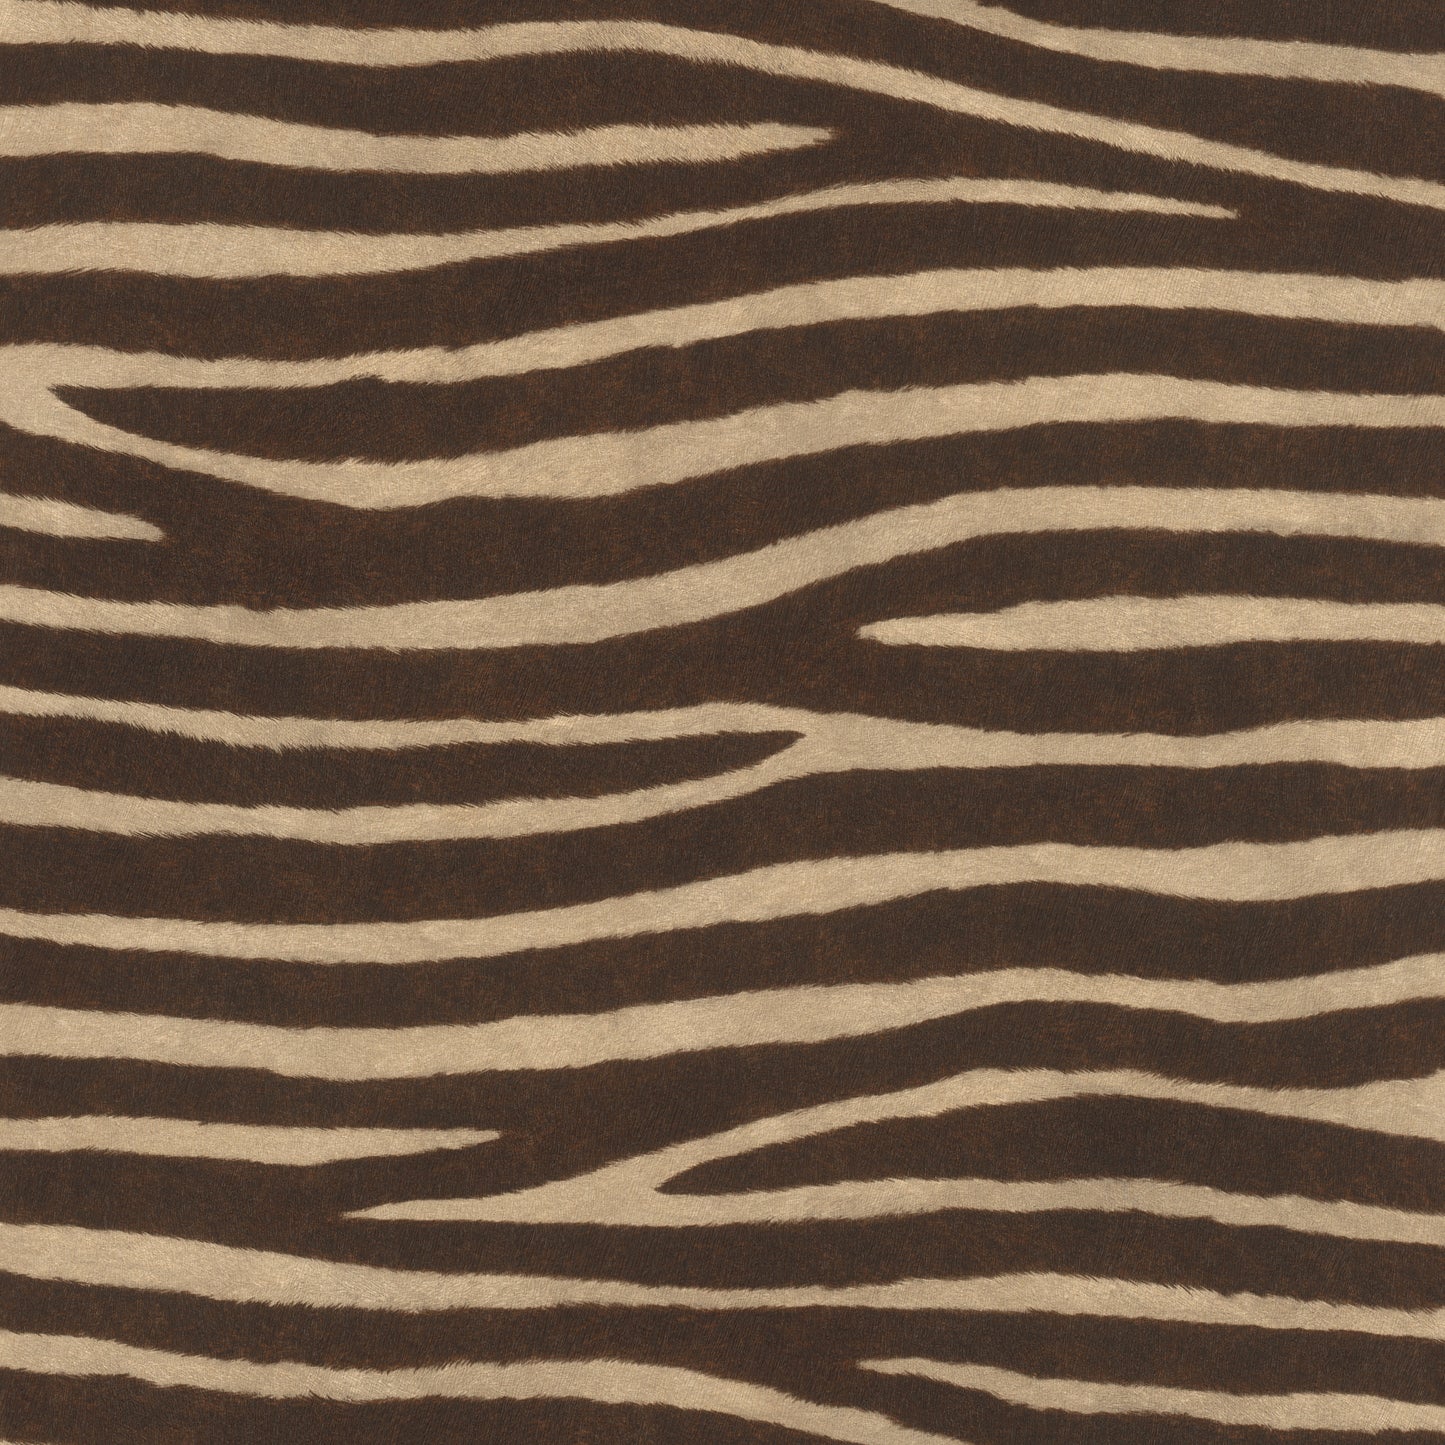 Zebra Skin Brown-Camel